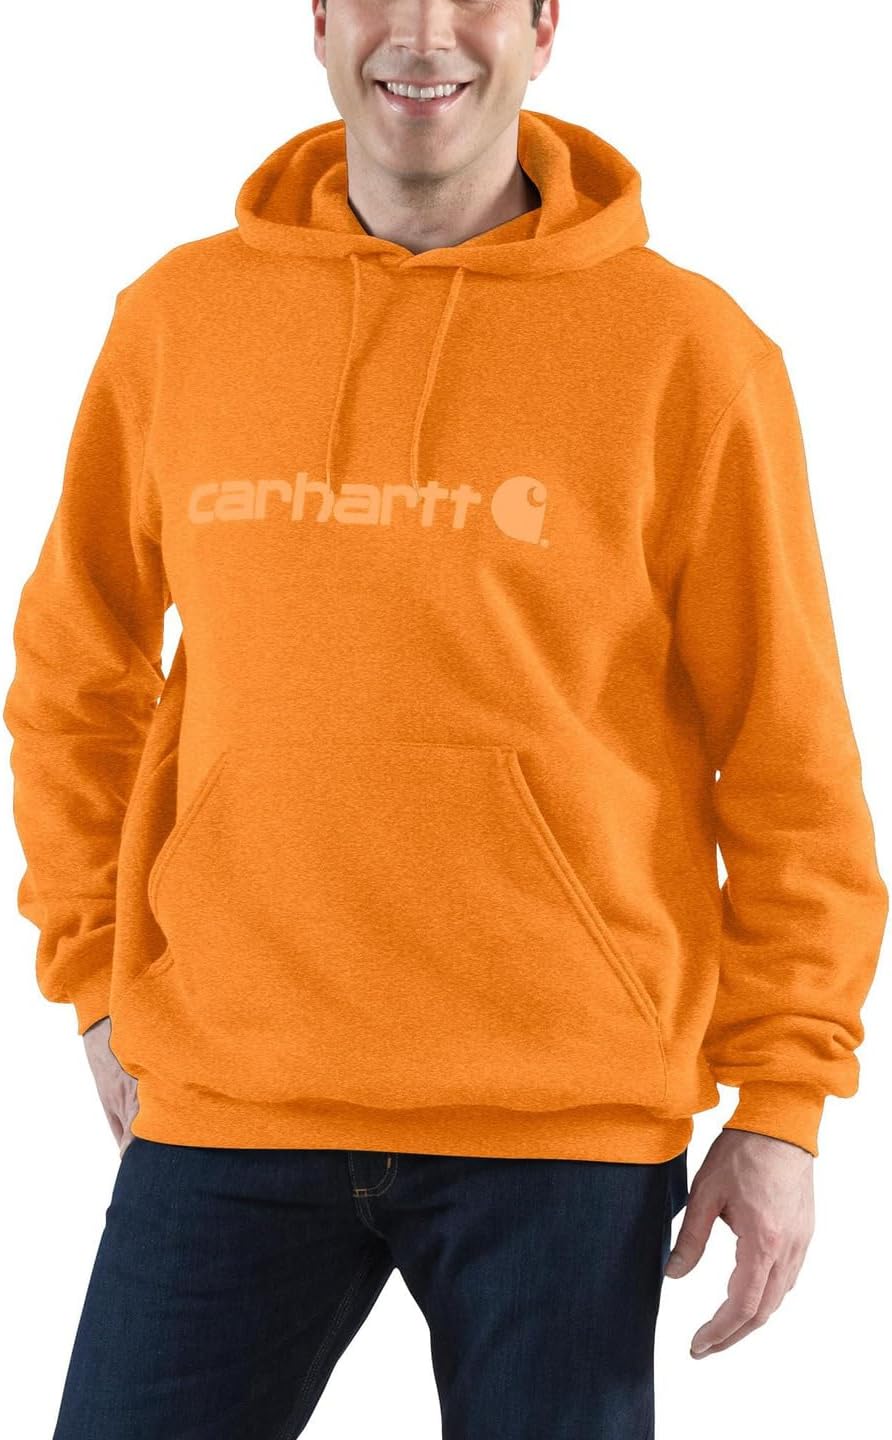 Толстовка средней плотности с фирменным логотипом Carhartt, цвет Marmalade Heather azovskaya marmalade assorted 300 g